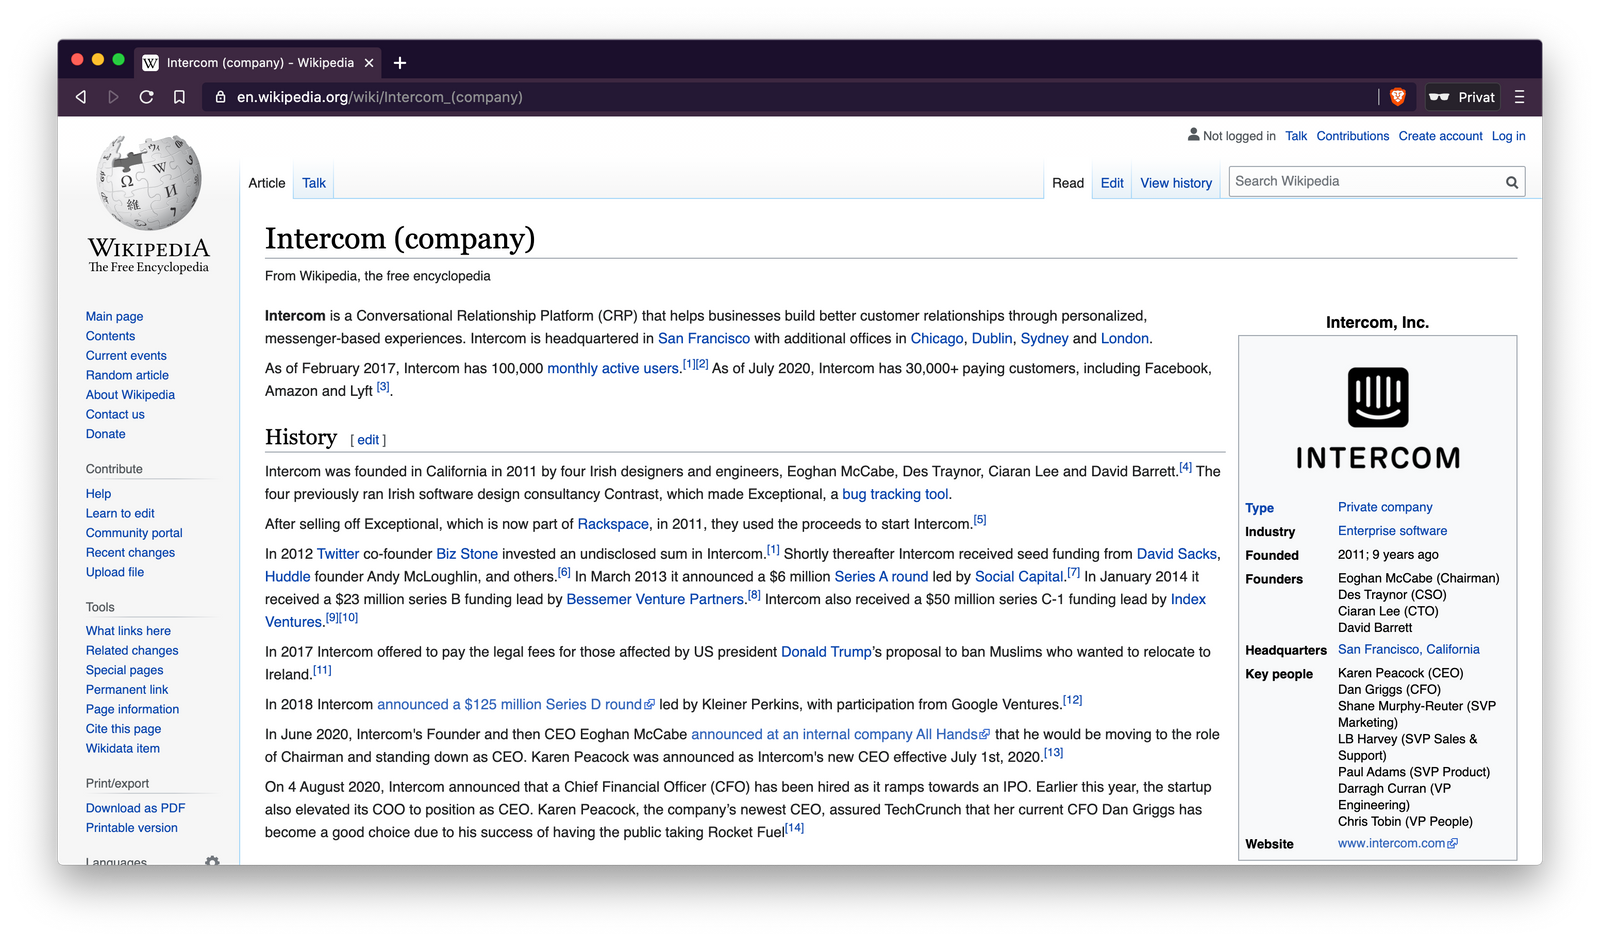 Wikipedia page for Intercom (company)